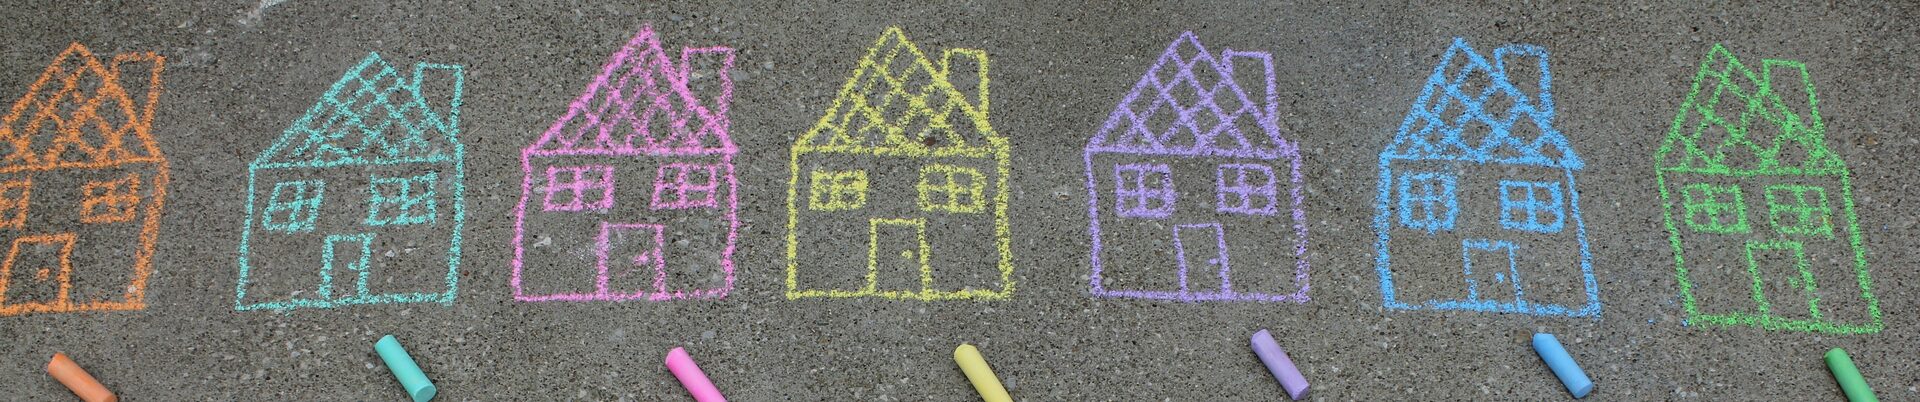 Mit bunter Kreide auf Straßenbelag gemalte Häuschen